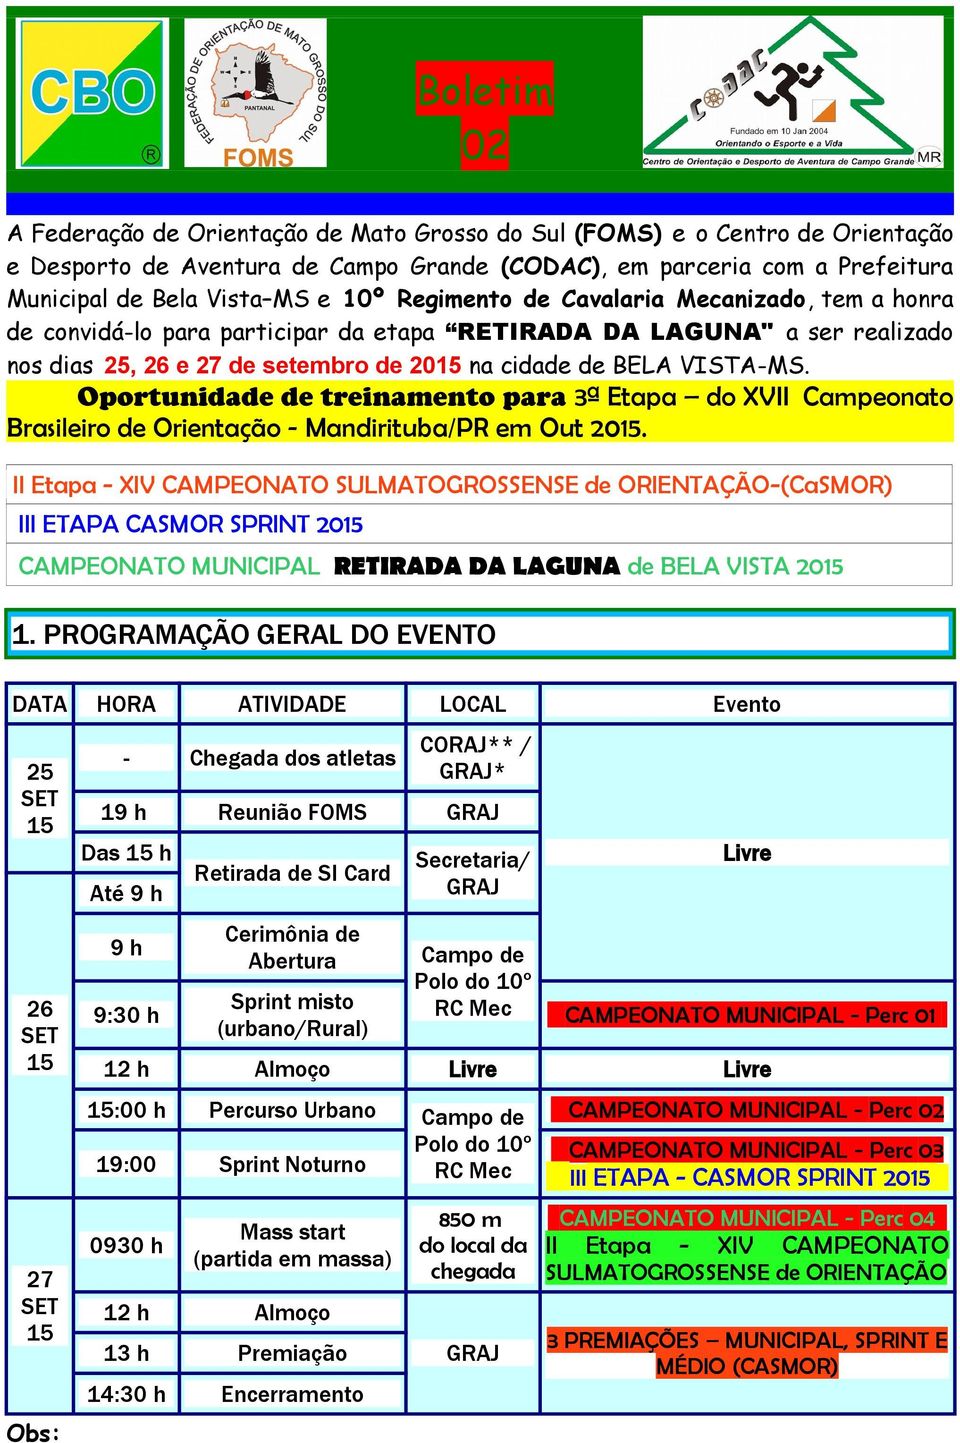 Oportunidade de treinamento para 3ª Etapa do XVII Campeonato Brasileiro de Orientação - Mandirituba/PR em Out 2015.